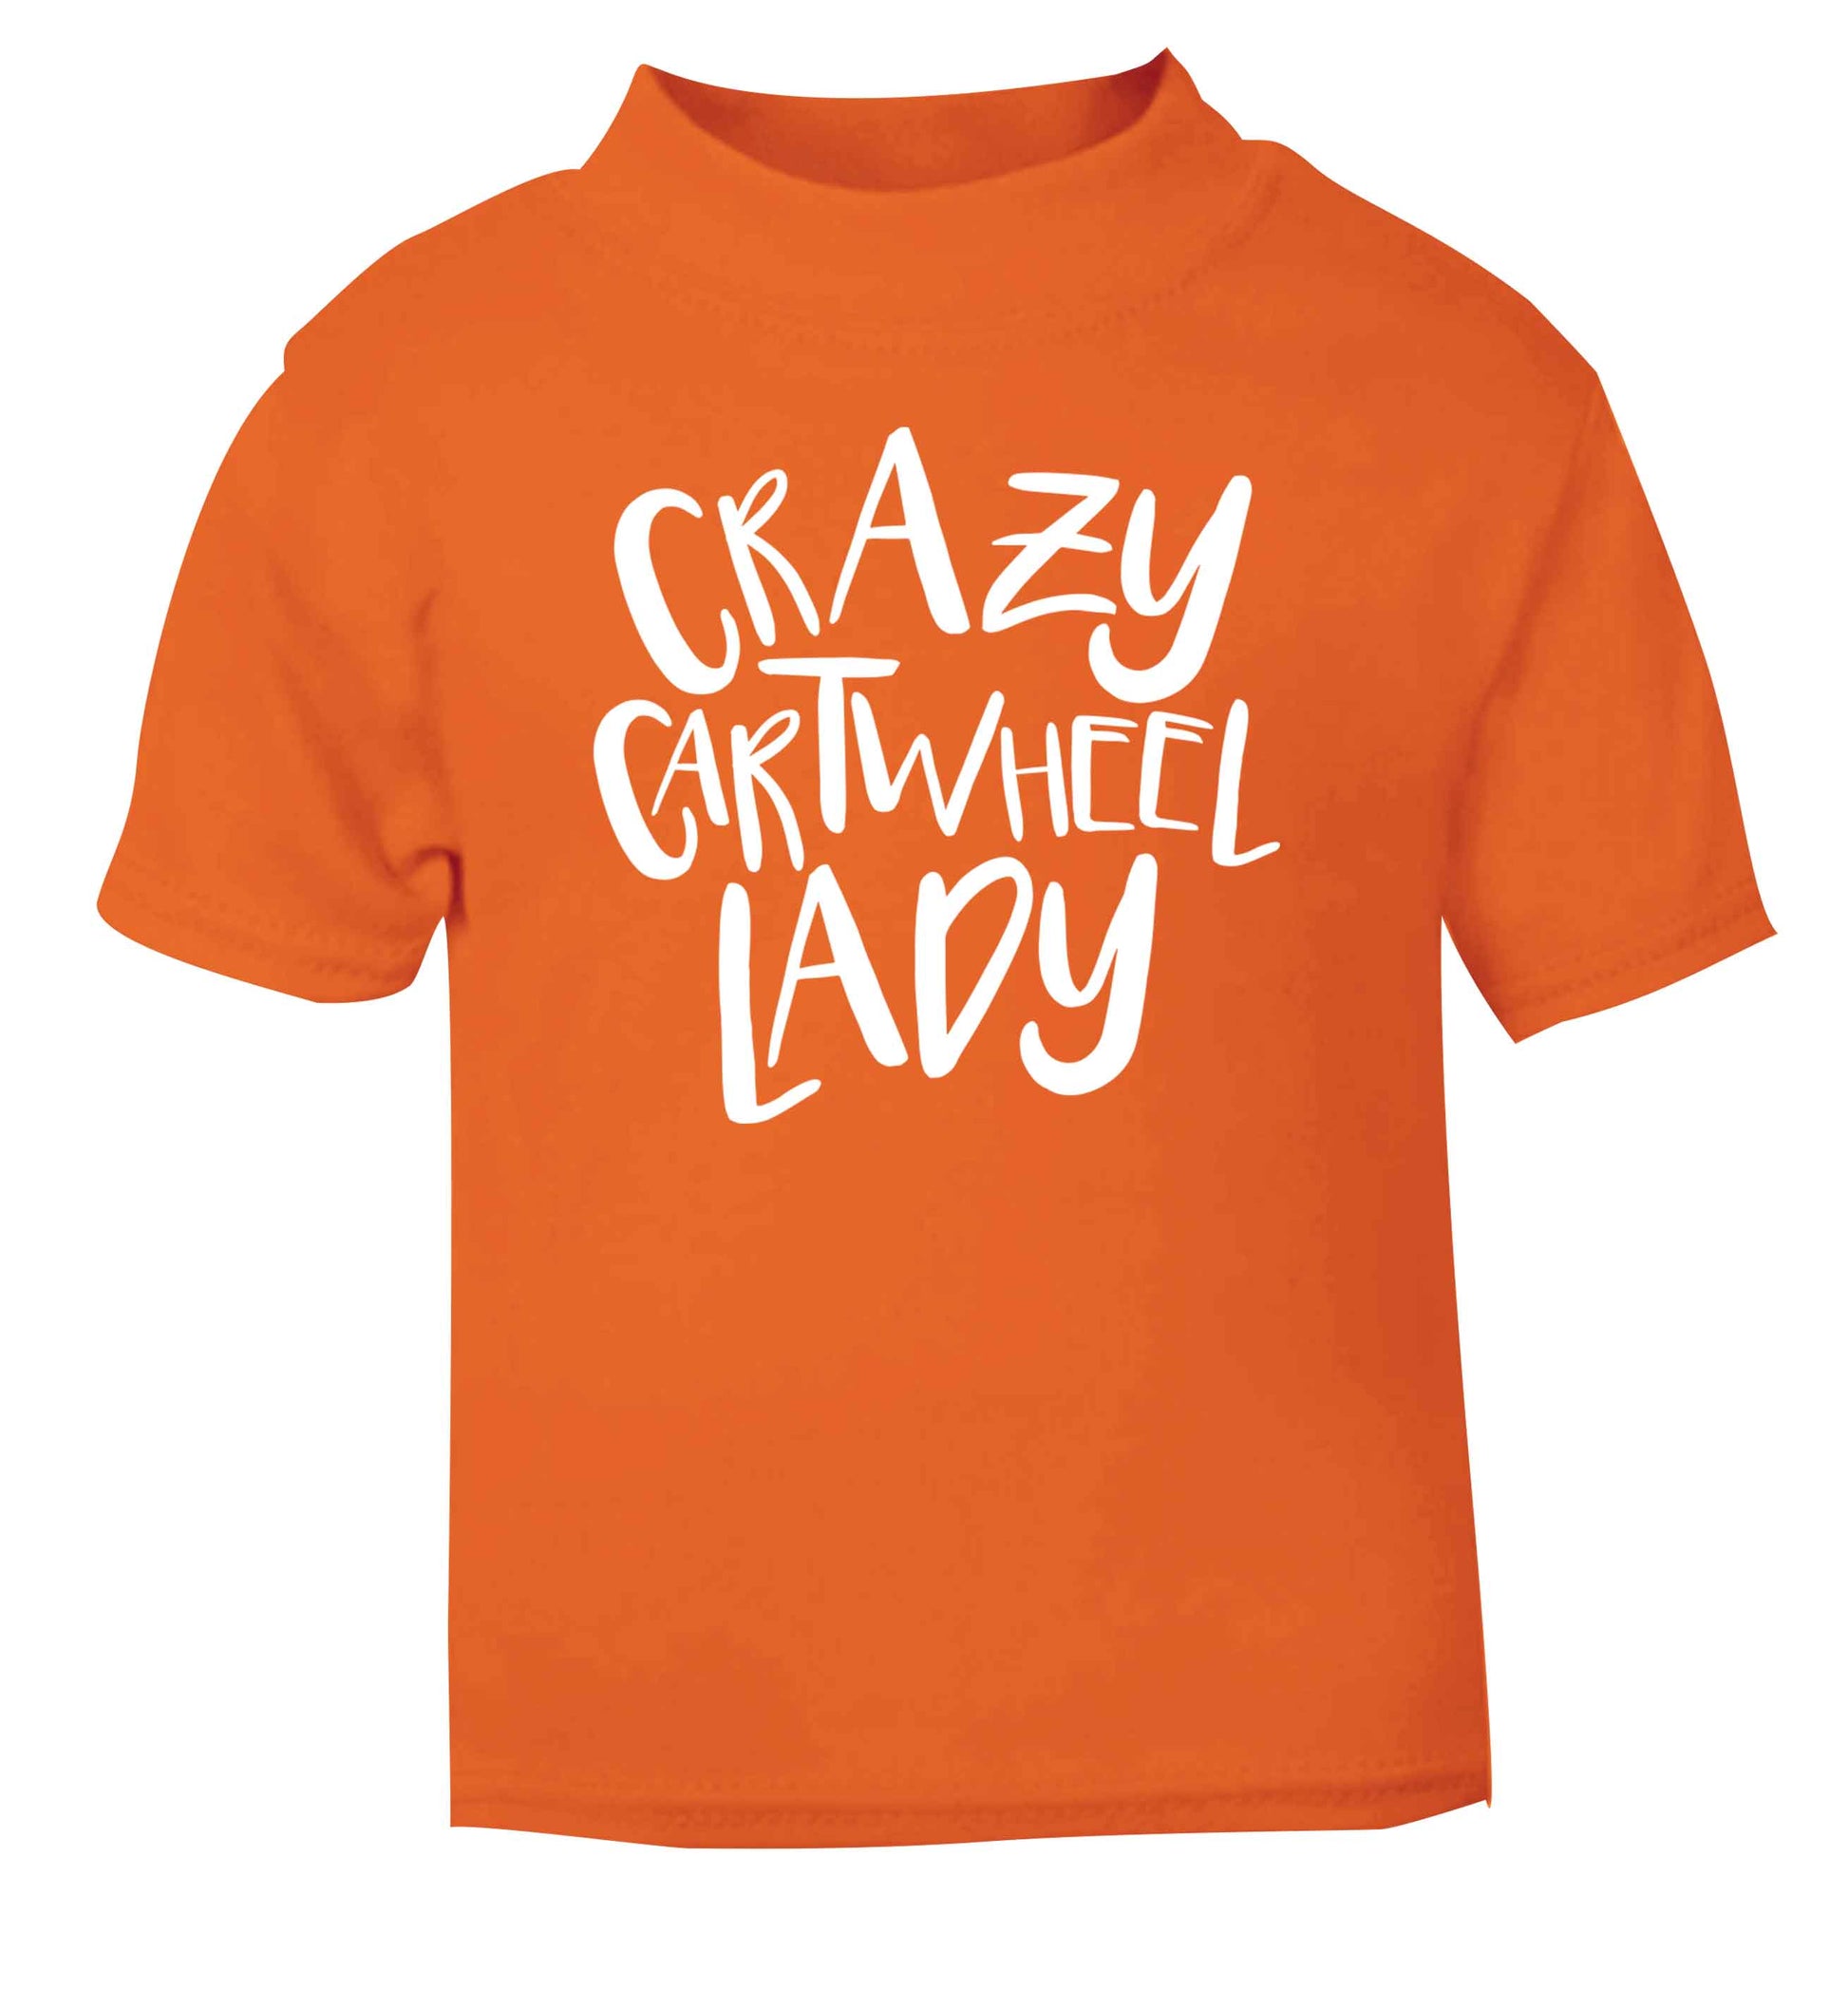 Crazy cartwheel lady orange Baby Toddler Tshirt 2 Years